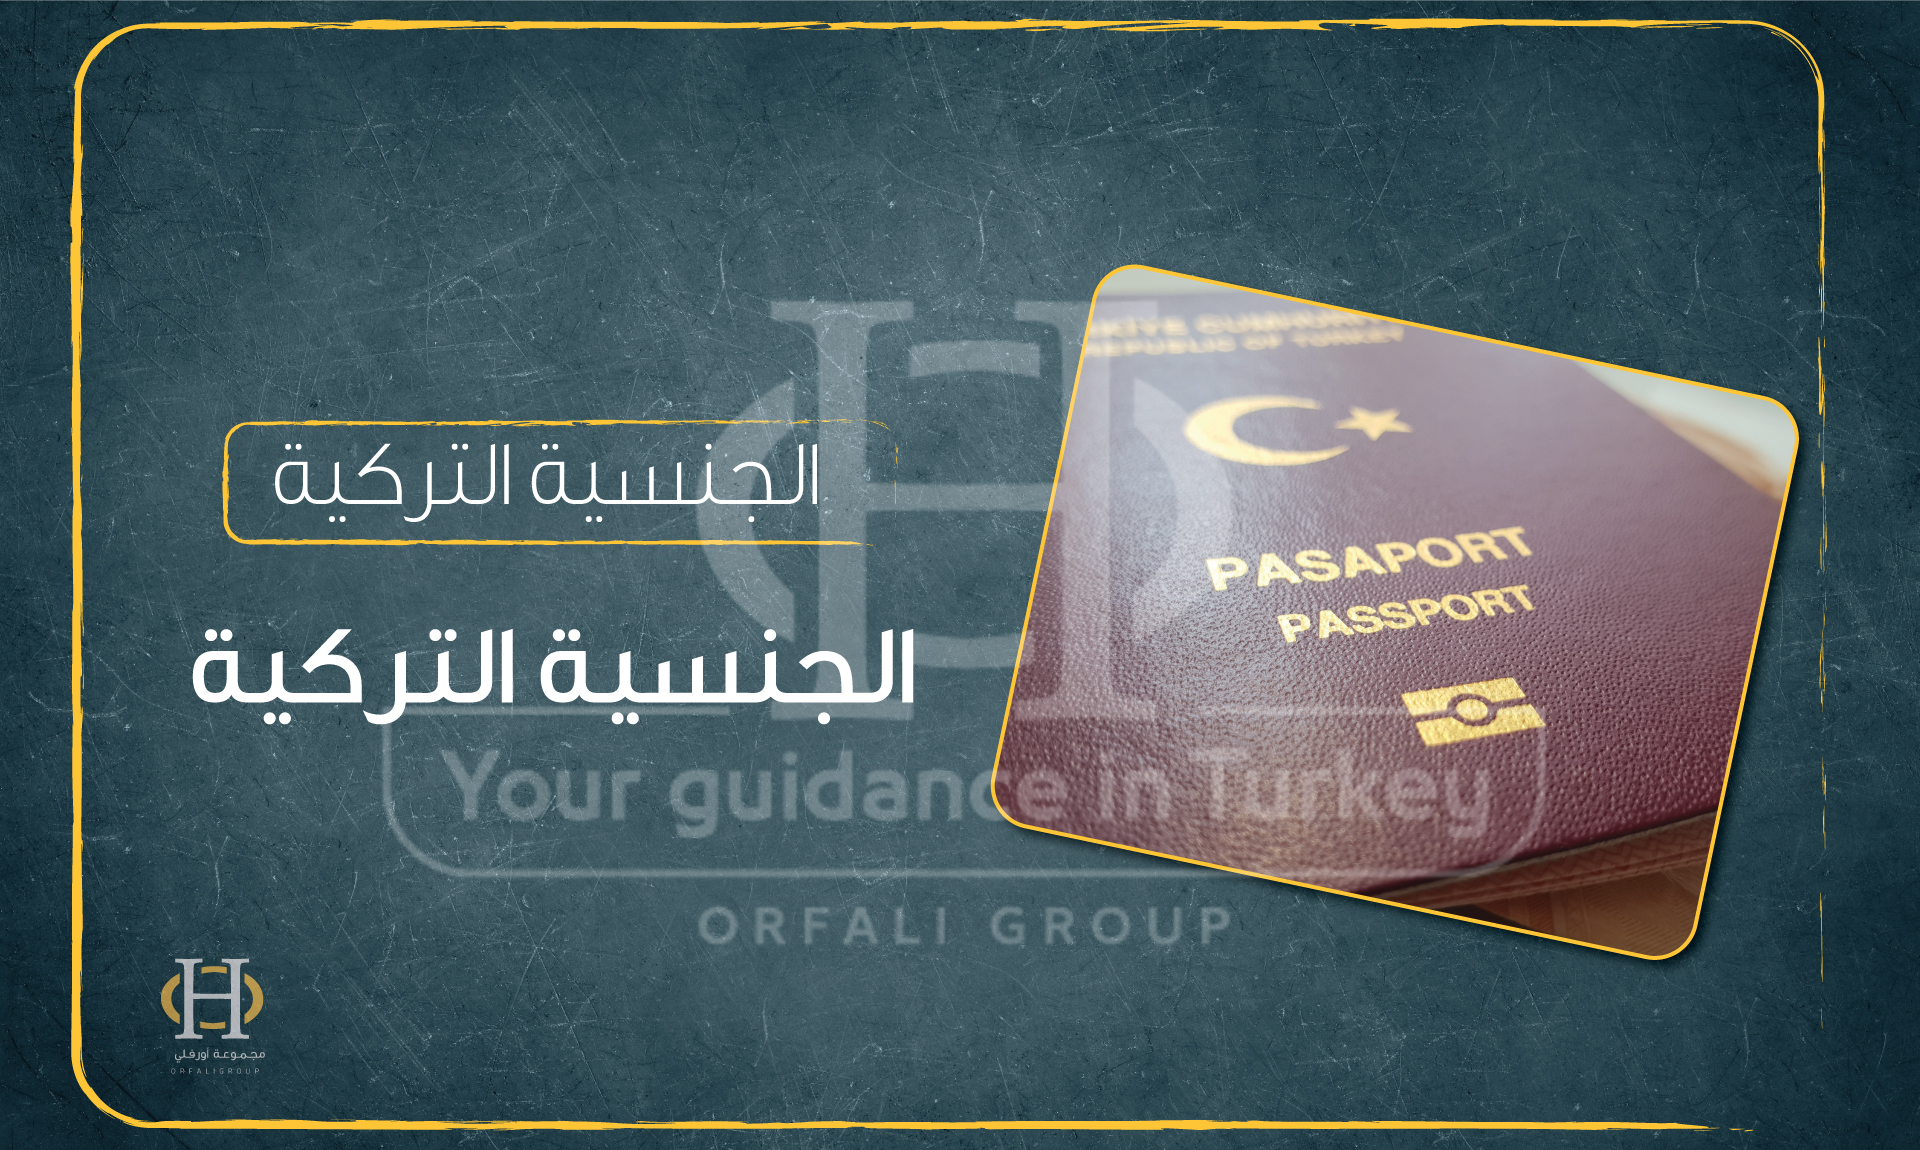 دليل كامل عن الجنسية التركية وكافة التفاصيل